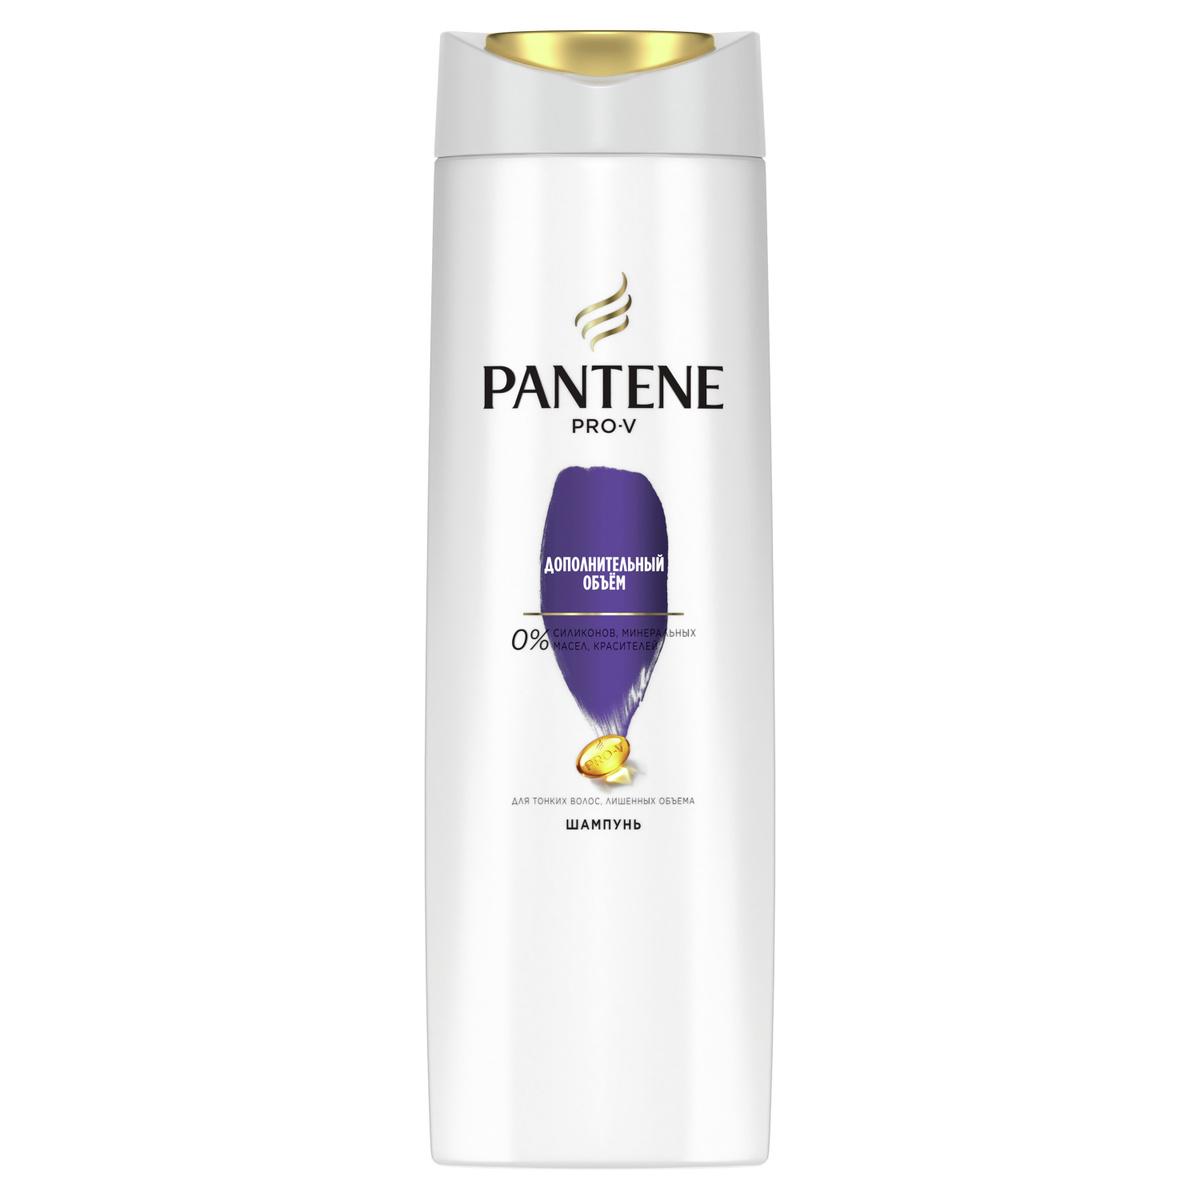 Pantene Pro-V Дополнительный объем для тонких, лишенных объема волос